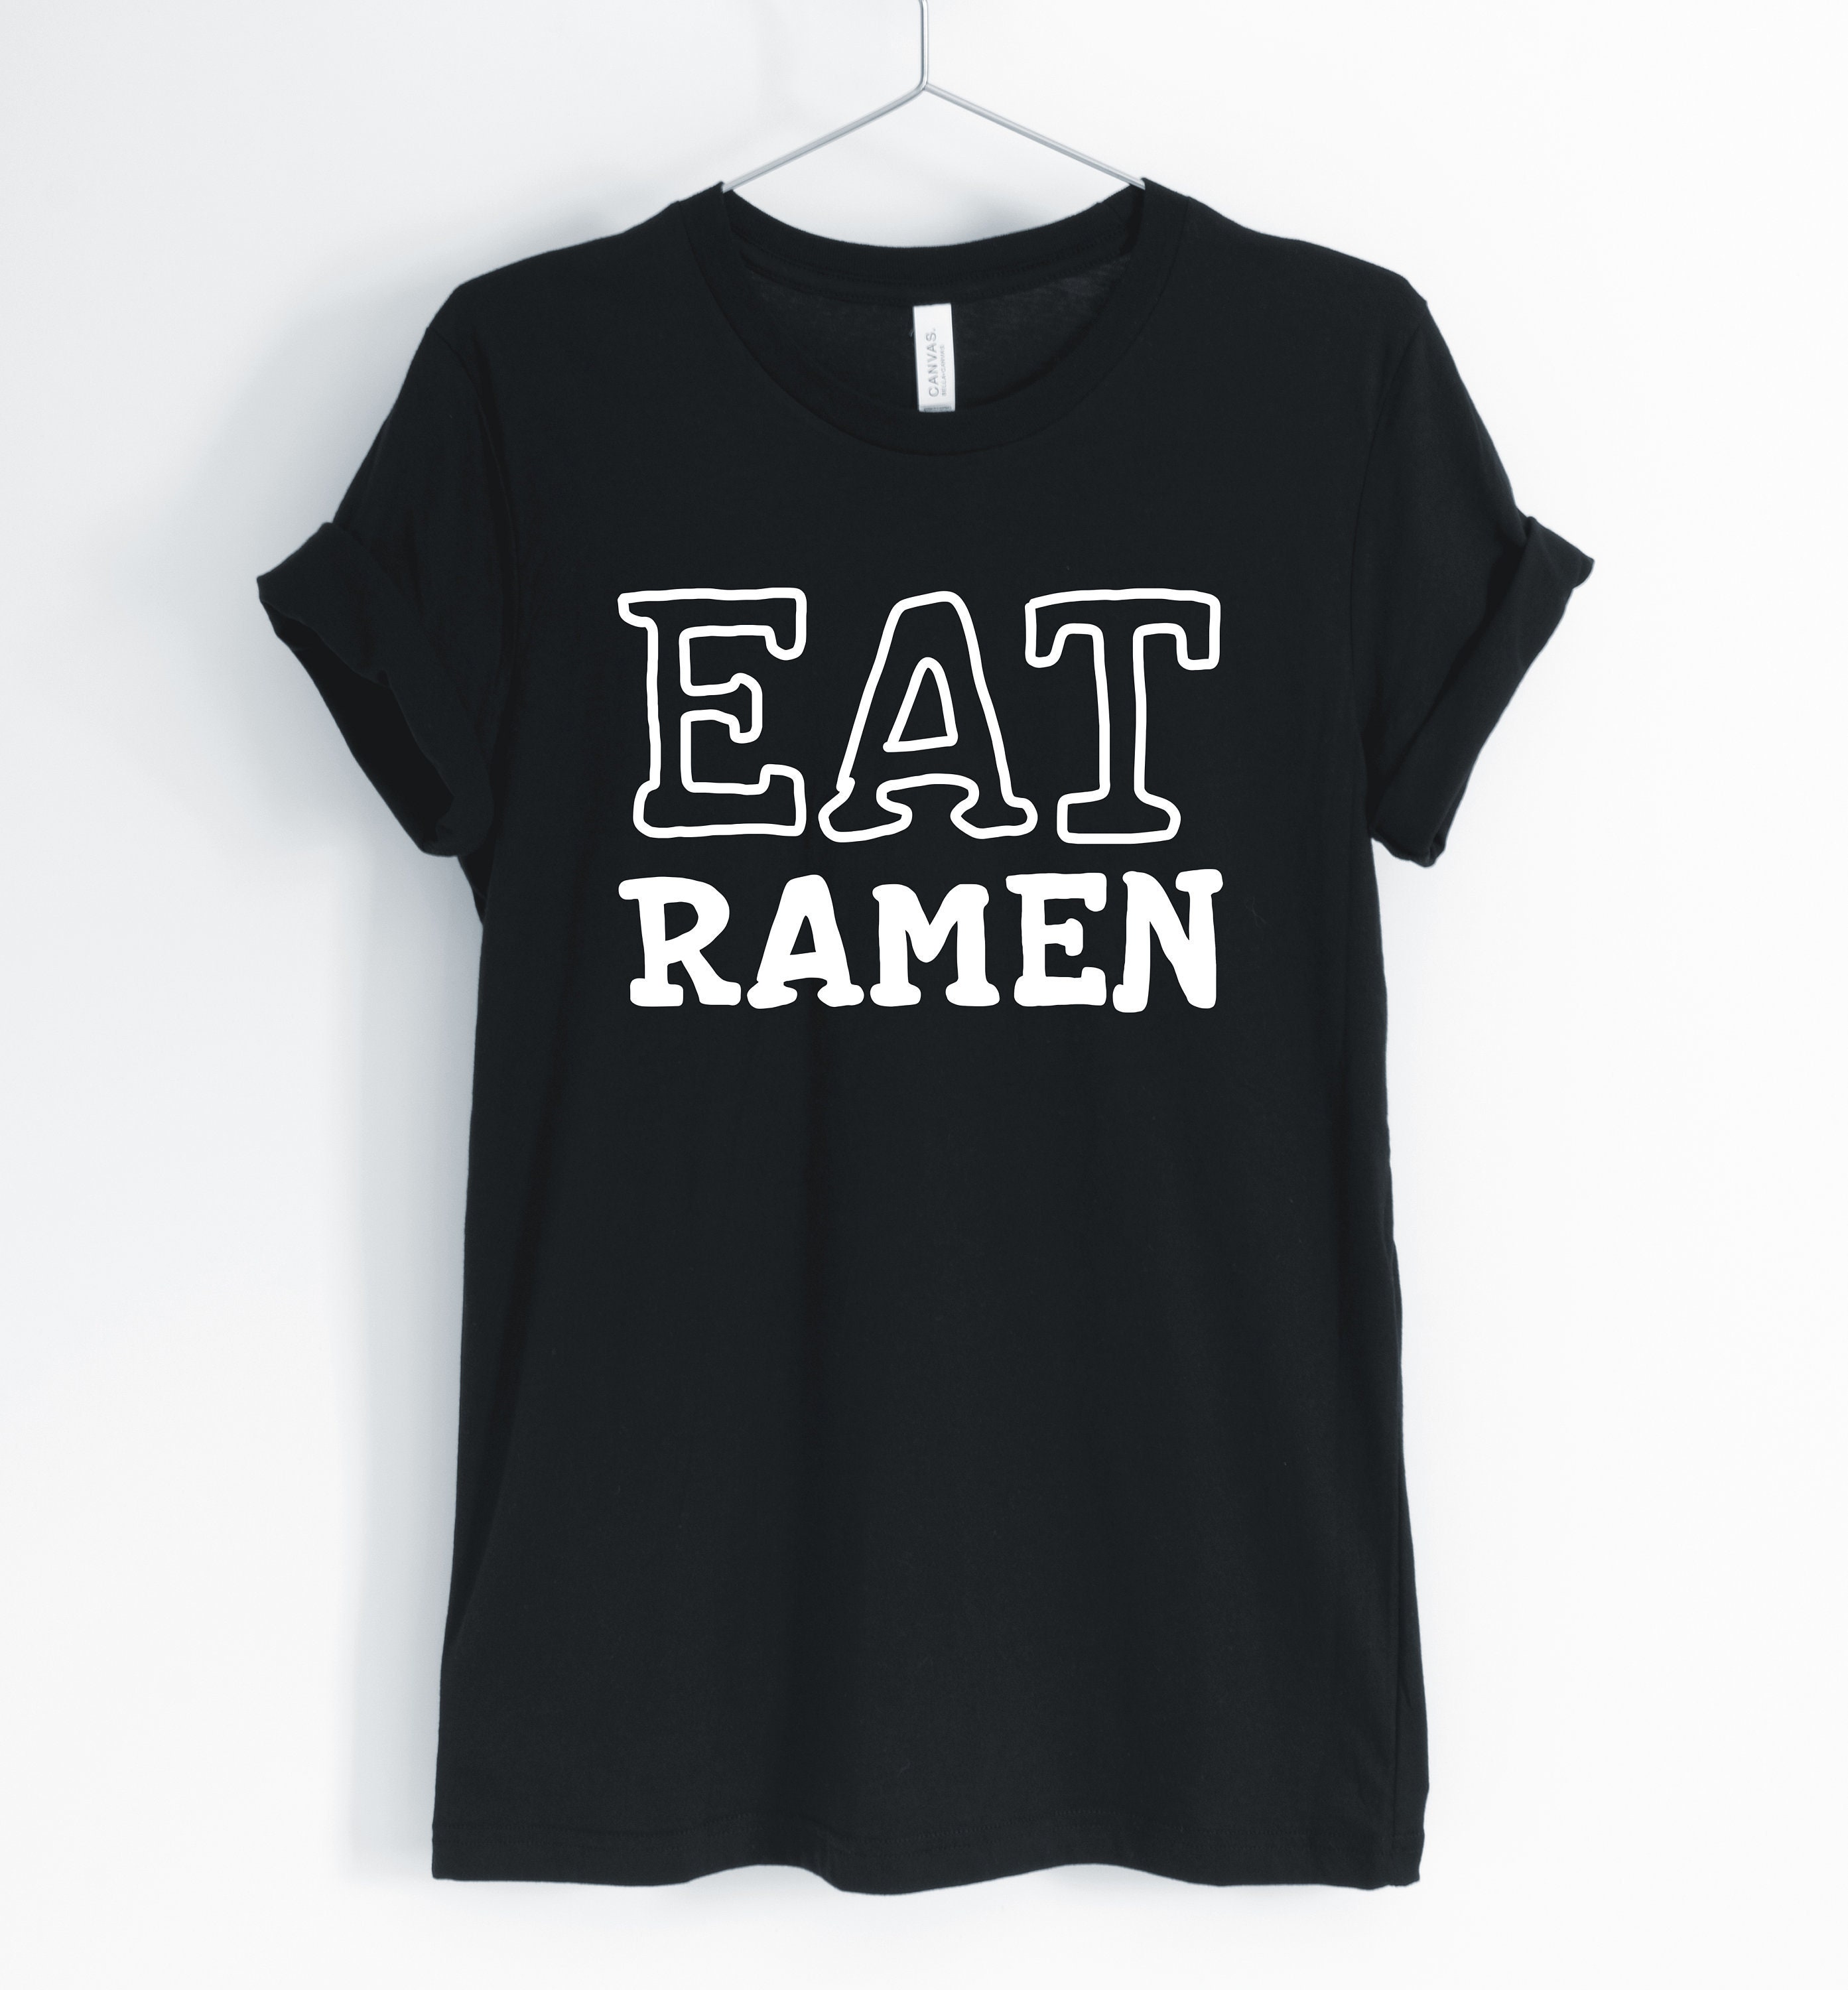 Eat Ramen, Ramen Shirt, Funny Lover, Addict, Japanese Food T-Shirt, Gift, Unisex & Women's Shirts